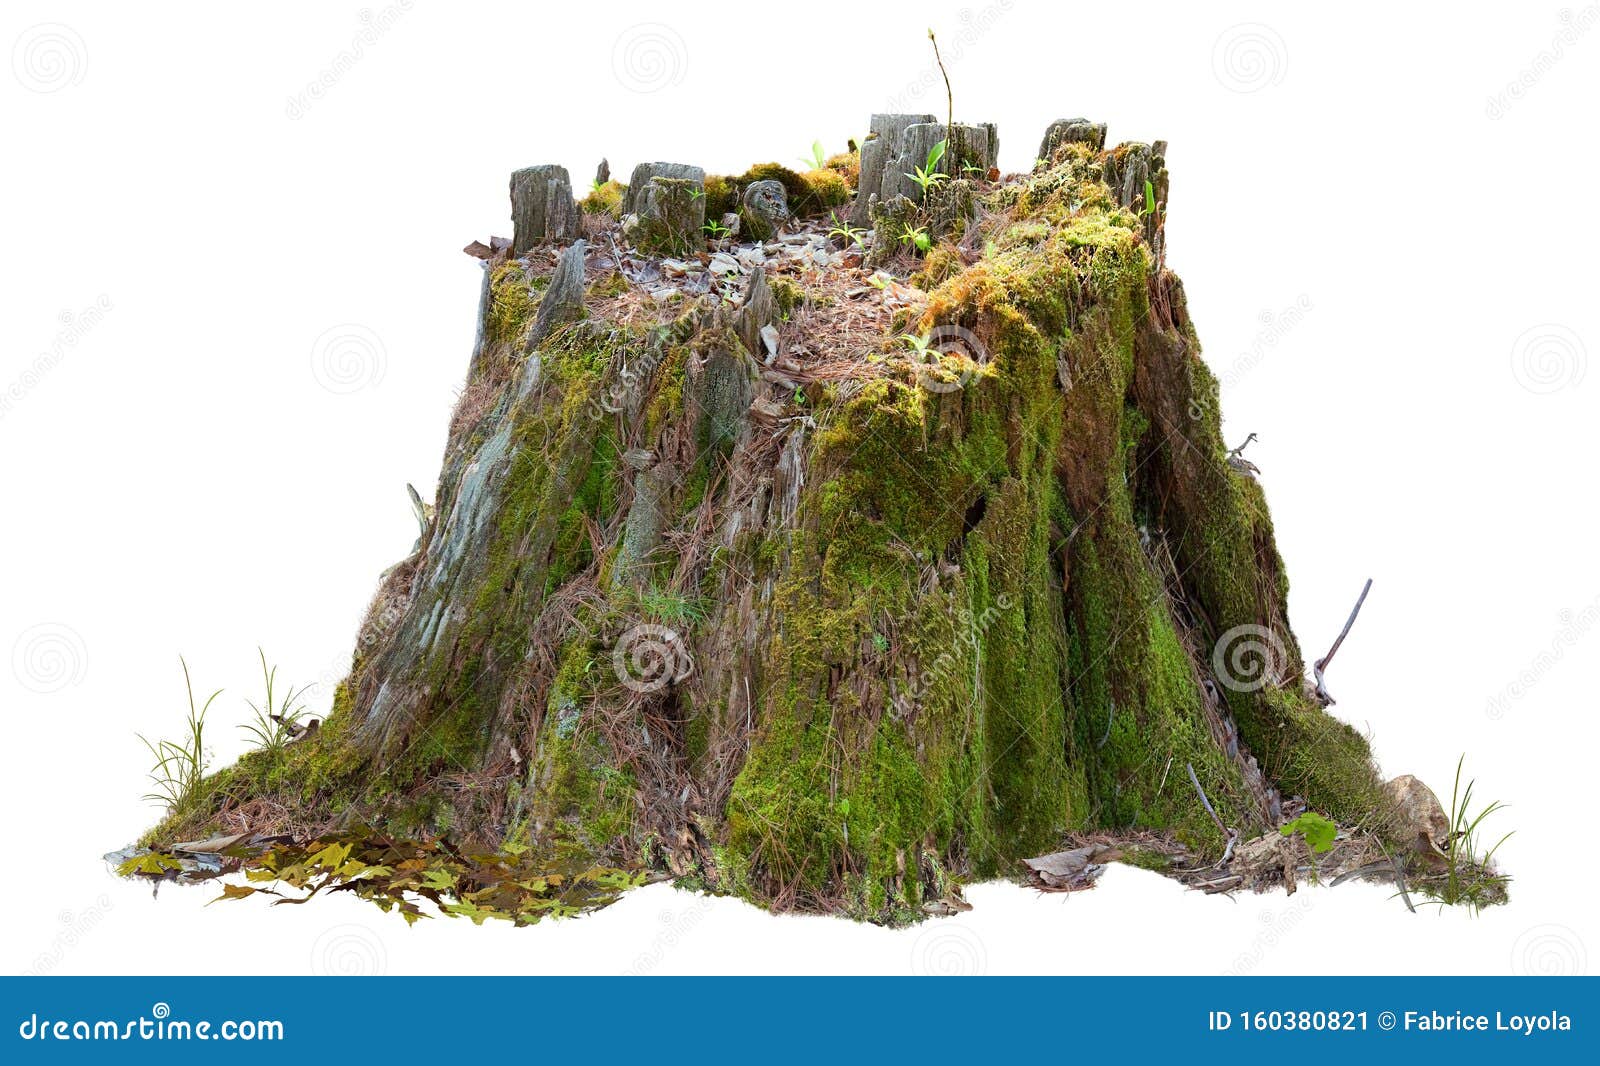 cutout tree stump. mossy trunk